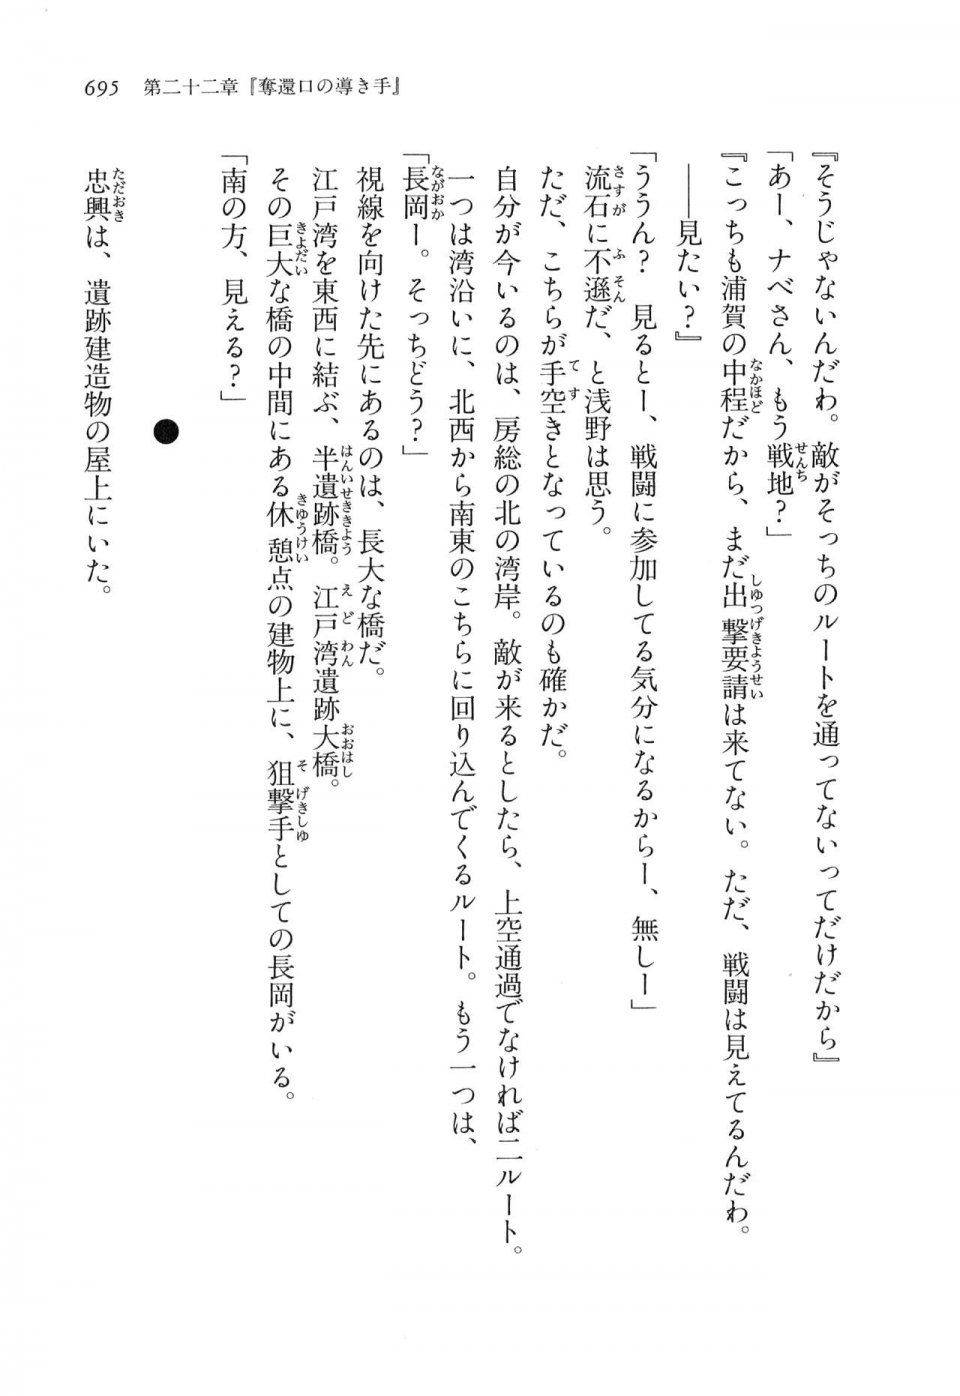 Kyoukai Senjou no Horizon LN Vol 16(7A) - Photo #695